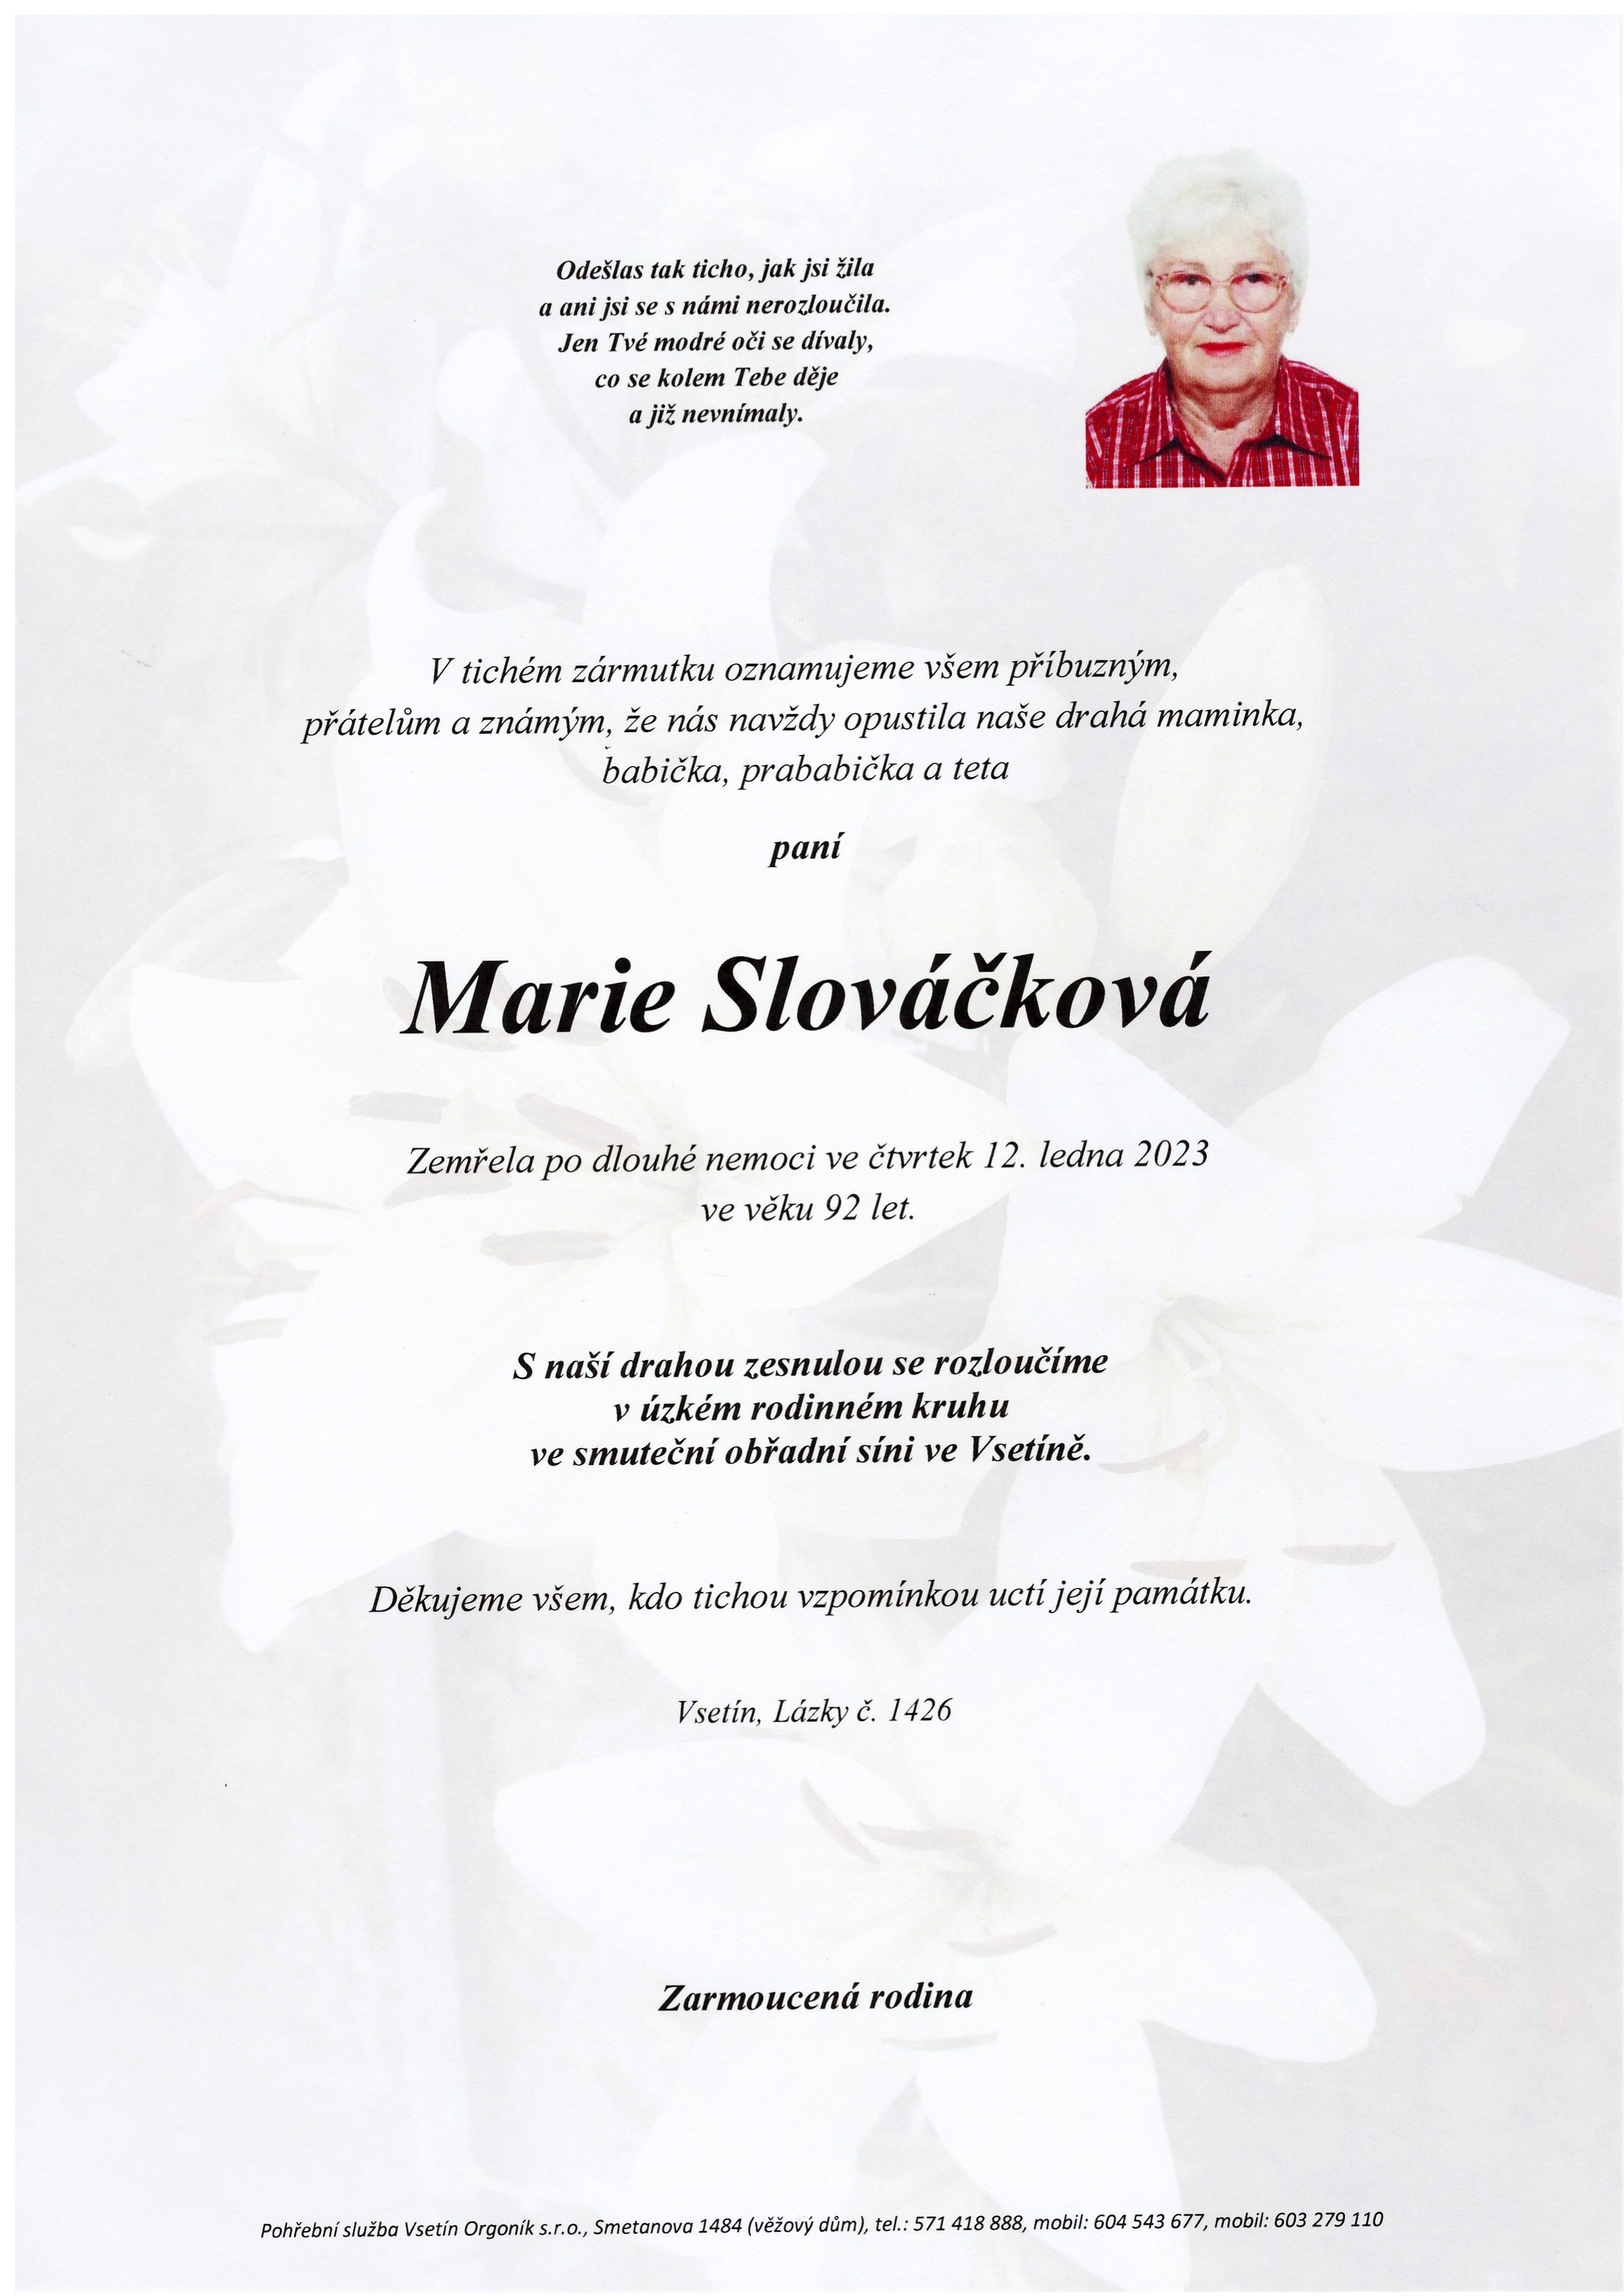 Marie Slováčková